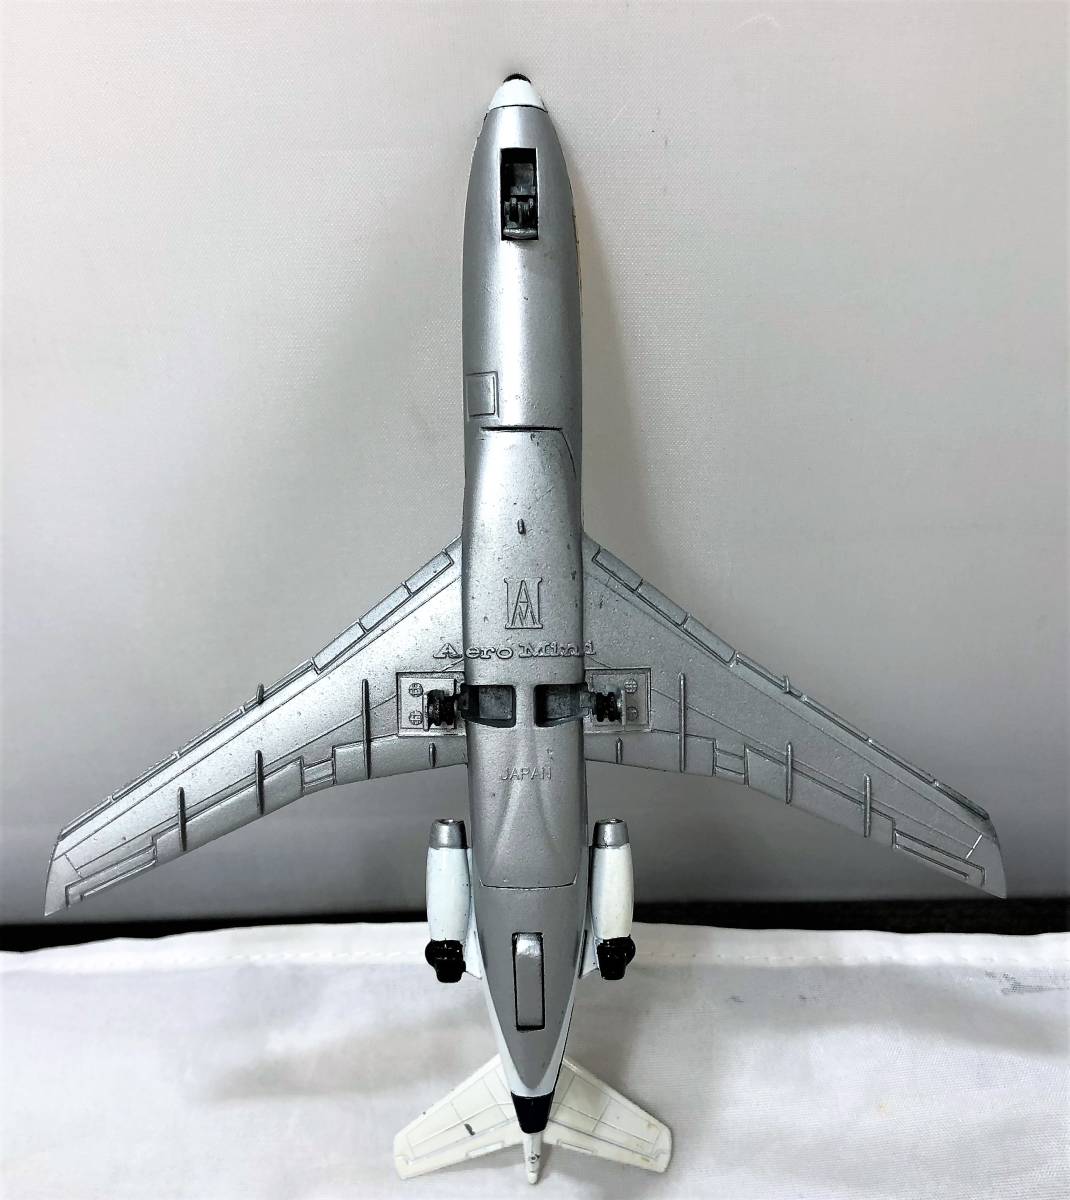 那時Modern Toys / Masudaya（Masudaya）Aeromini壓鑄件·比例模型3件ANA / JAL波音727,737 原文:当時物 モダントイズ/増田屋(マスダヤ） エアロミニ ダイカスト・スケールモデル3個 ANA/JALボーイング727、737